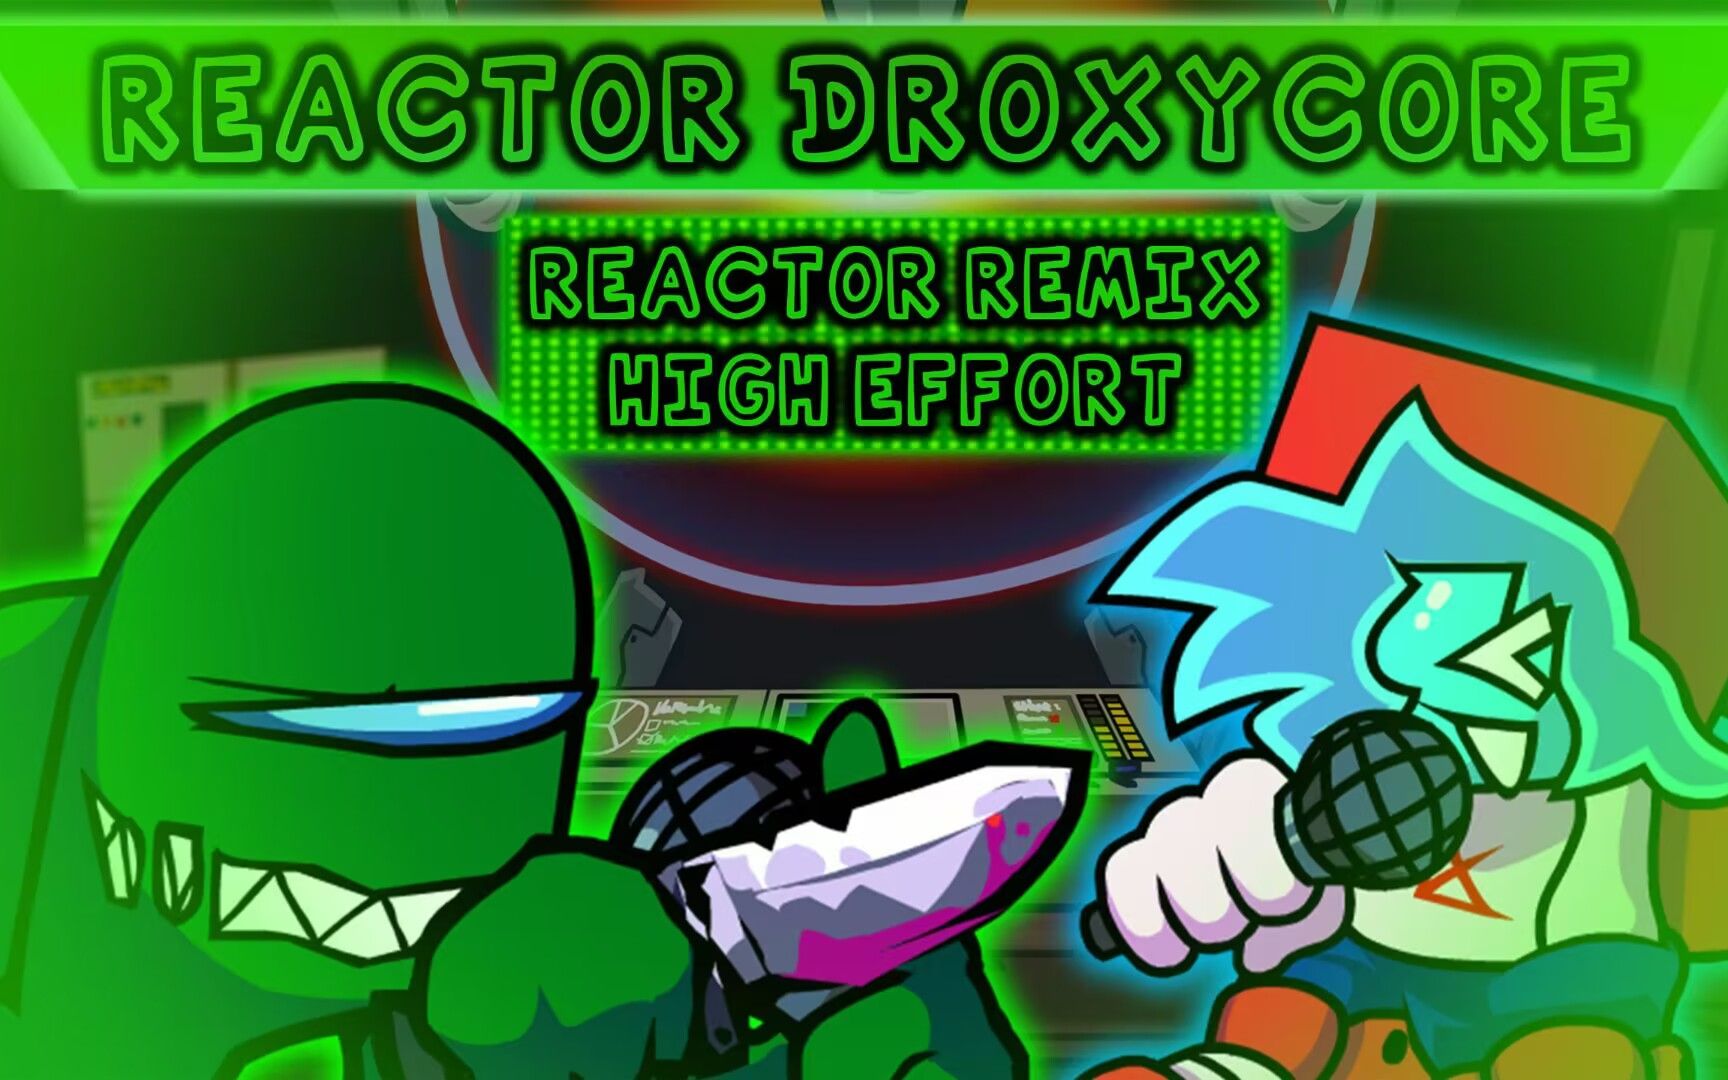 [神曲警告]Reactor高质量Remix!——Reactor DroxyCore!